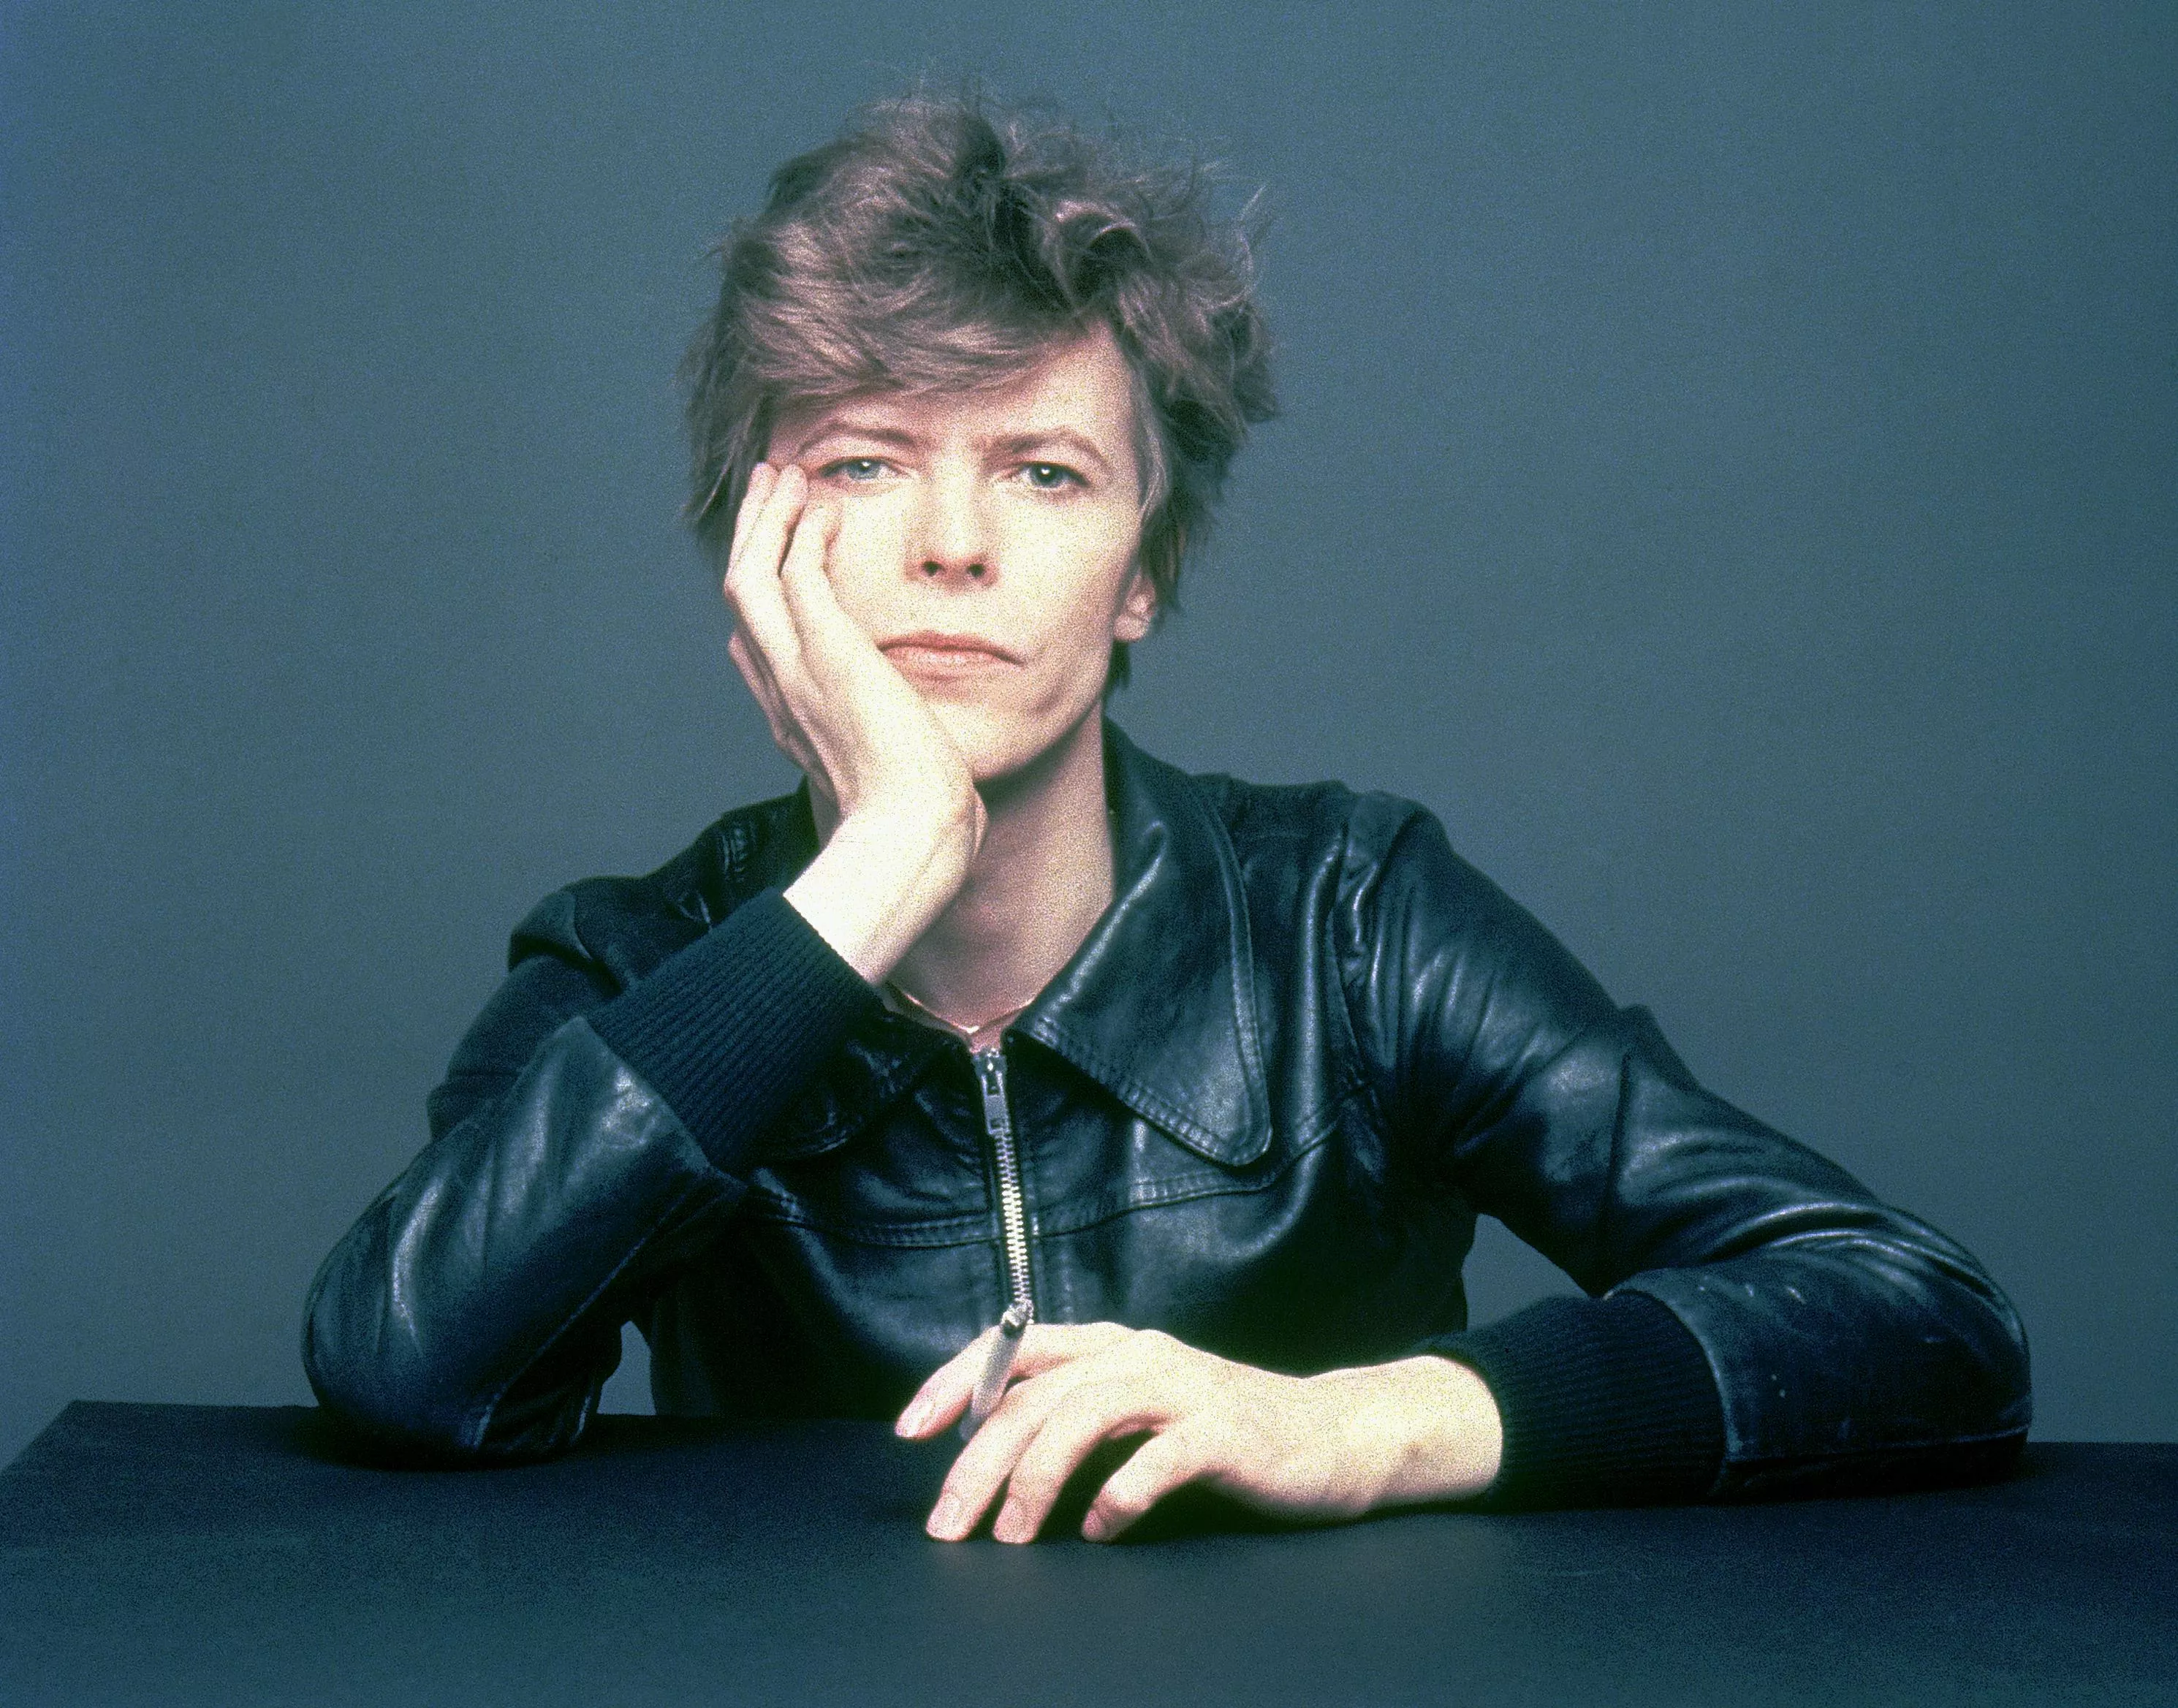 Flot bokssæt fra Bowies unge år